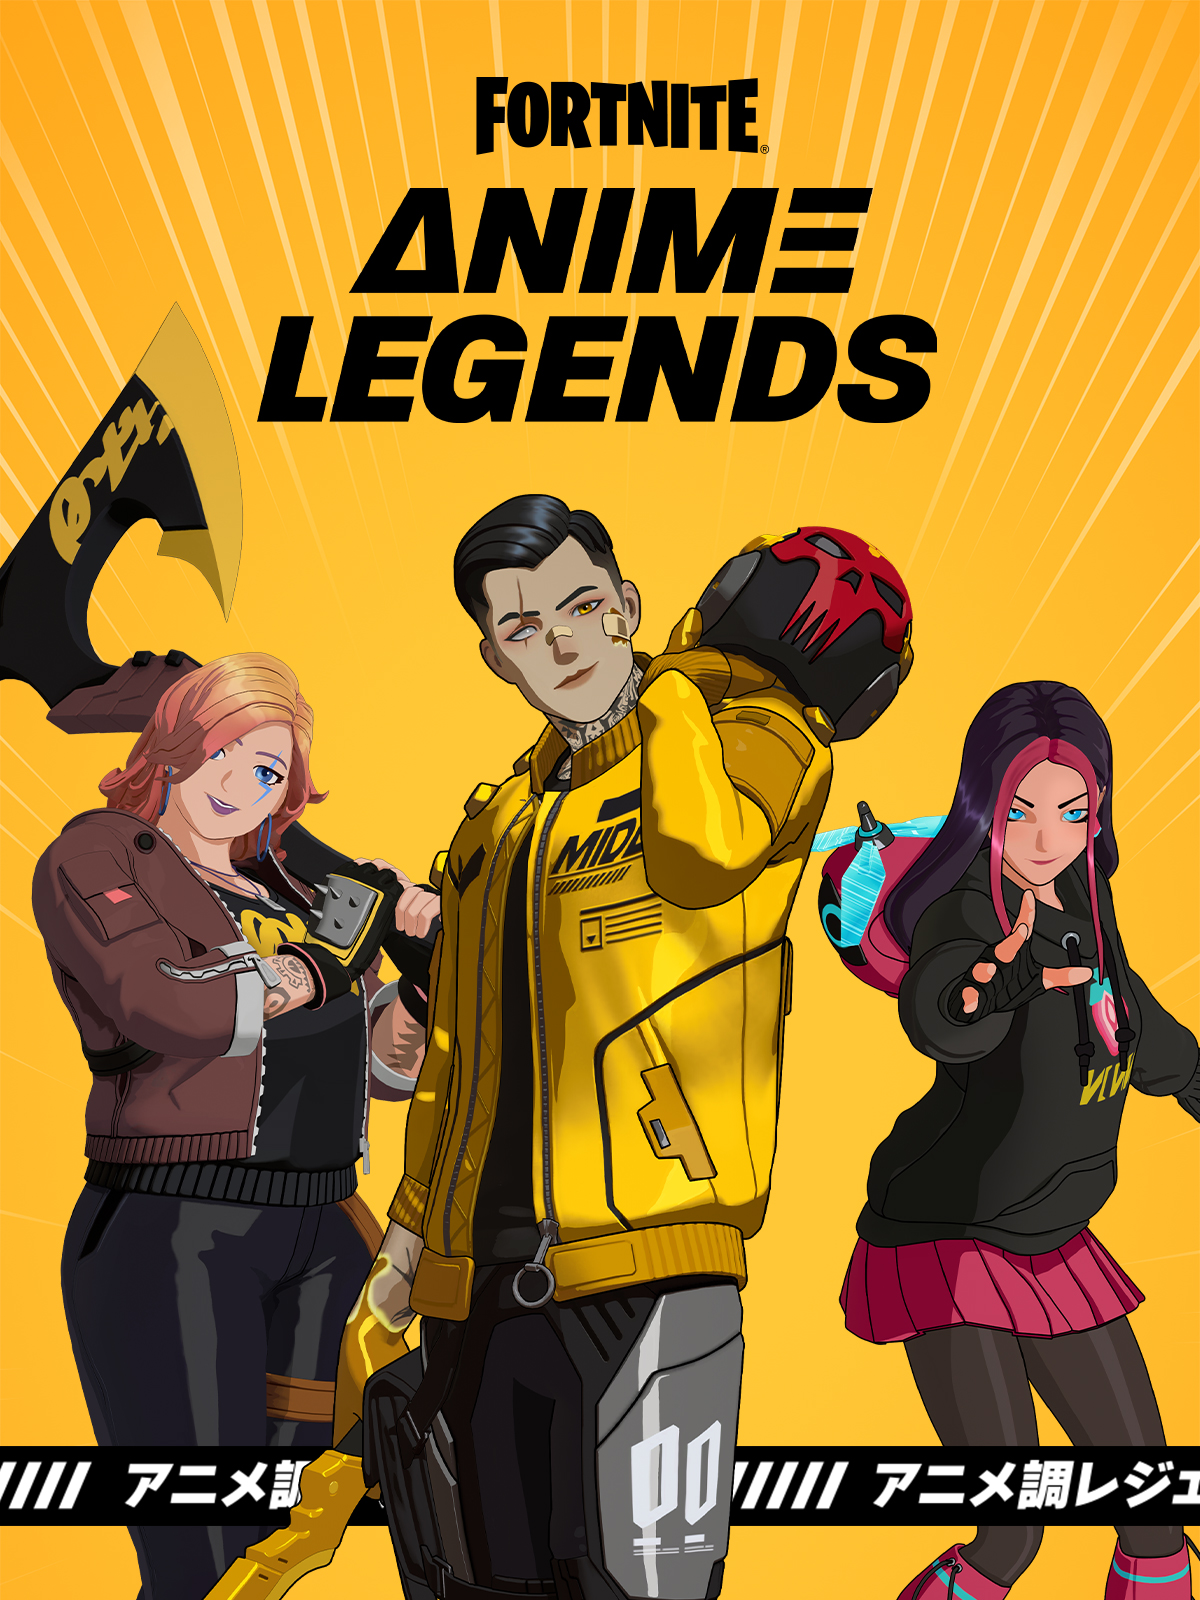 avo mor recommends Fortnite Anime Legends Pack